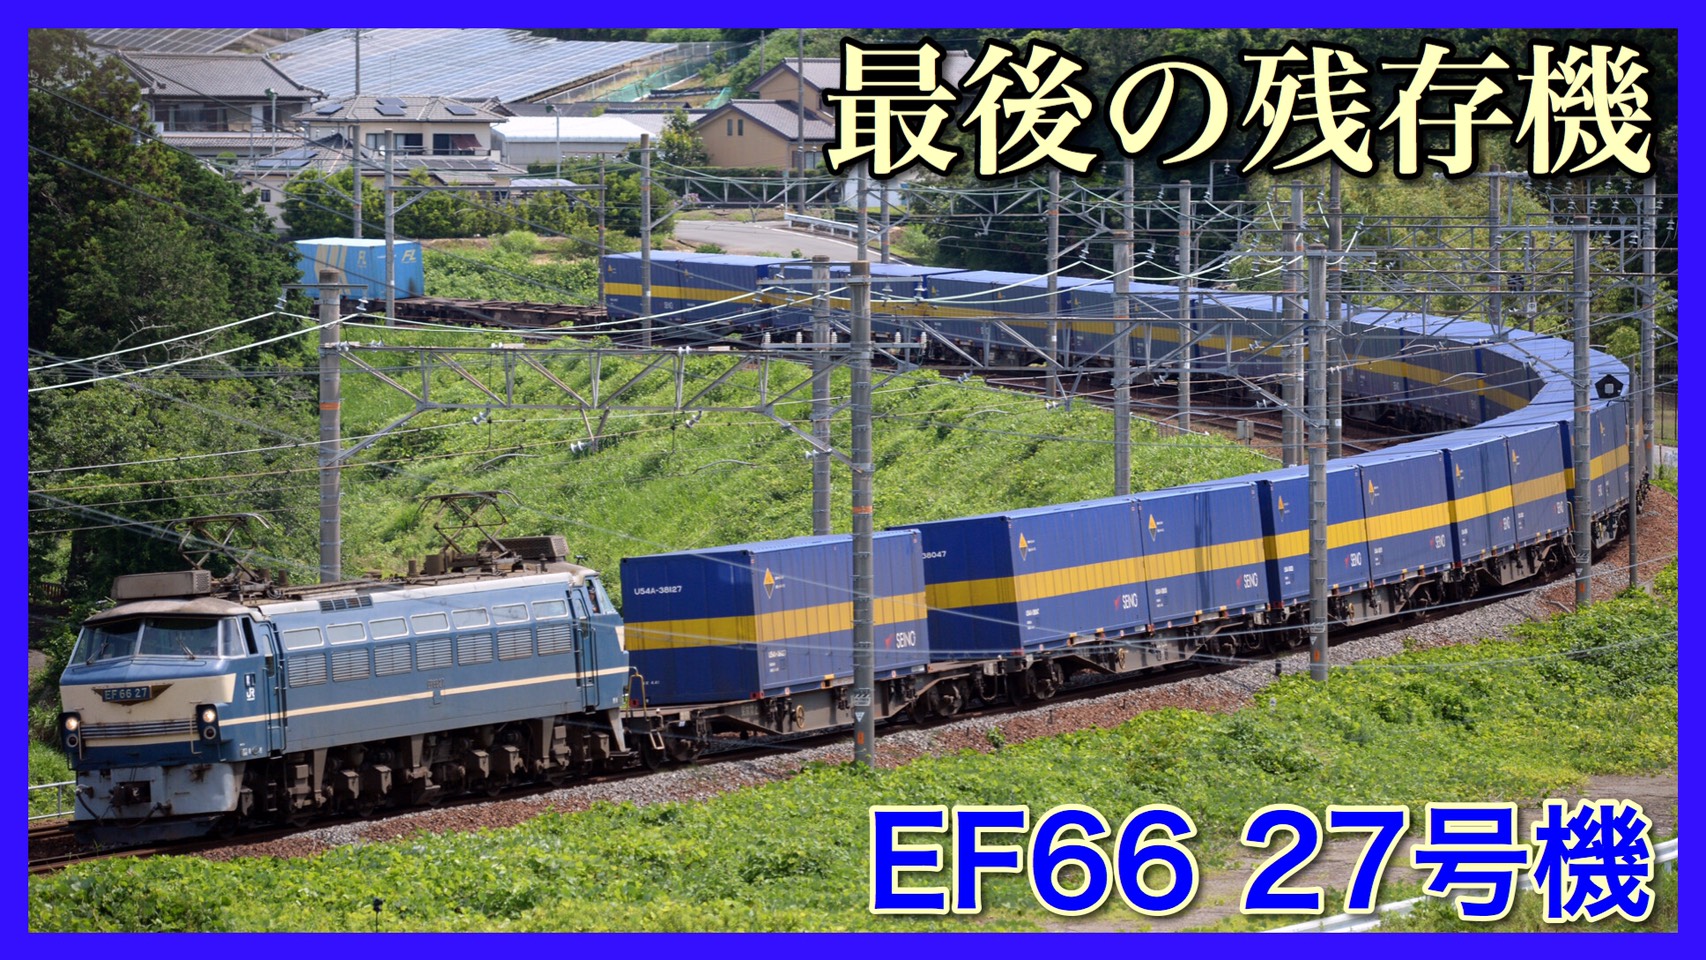 奇跡の活躍 Ef66形0番台最後の残存 27号機が59列車に登板 鉄道ファンの待合室